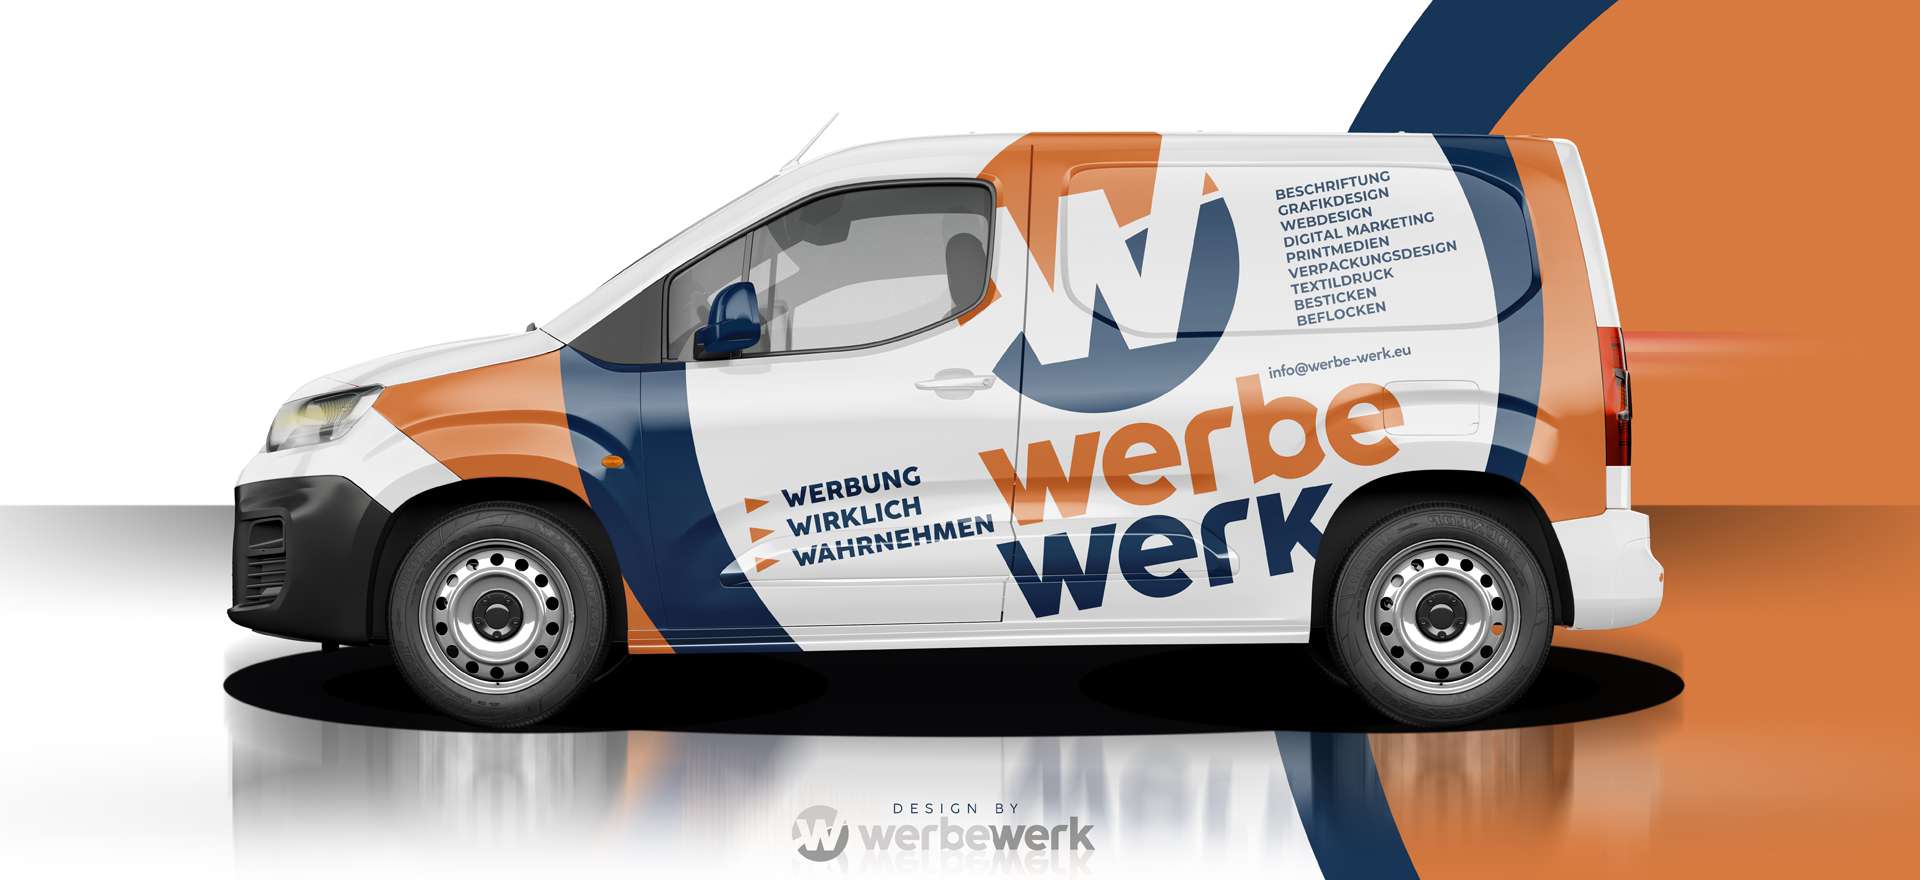 Fahrzeug- & Objektbeschriftung, Verpackungsdesign | werbewerk GmbH | Schopfheim